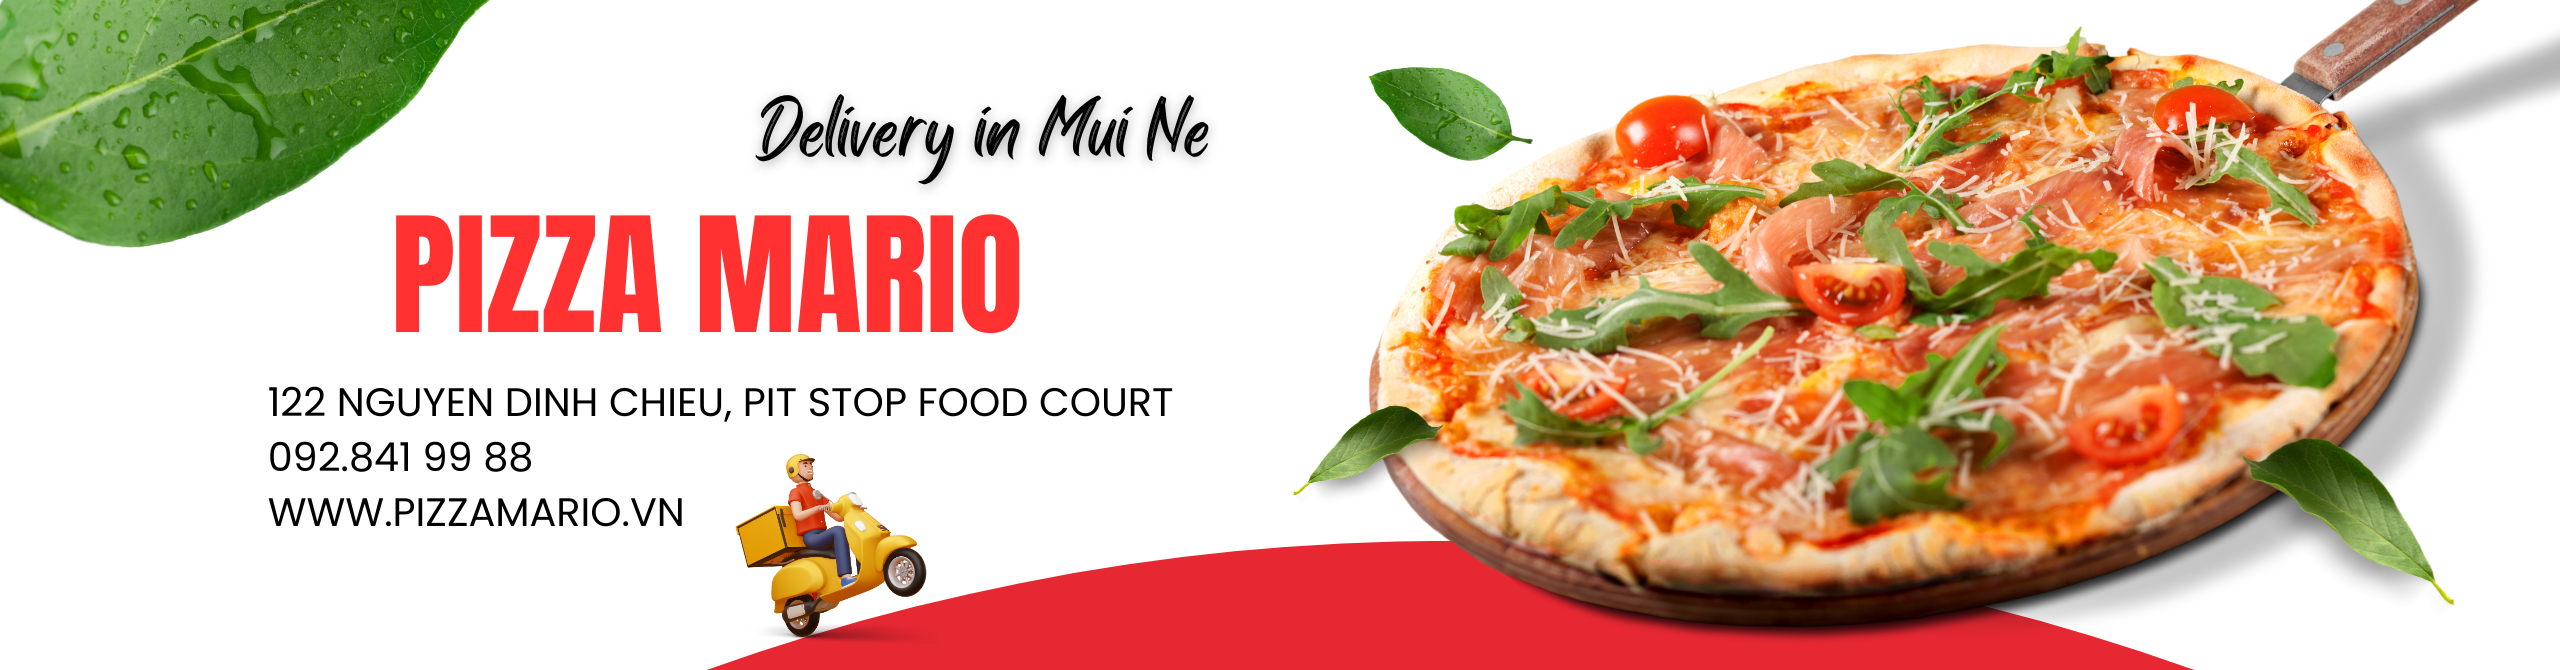 Pizza Mario - pizza ngon ở Phan Thiết - Mũi Né